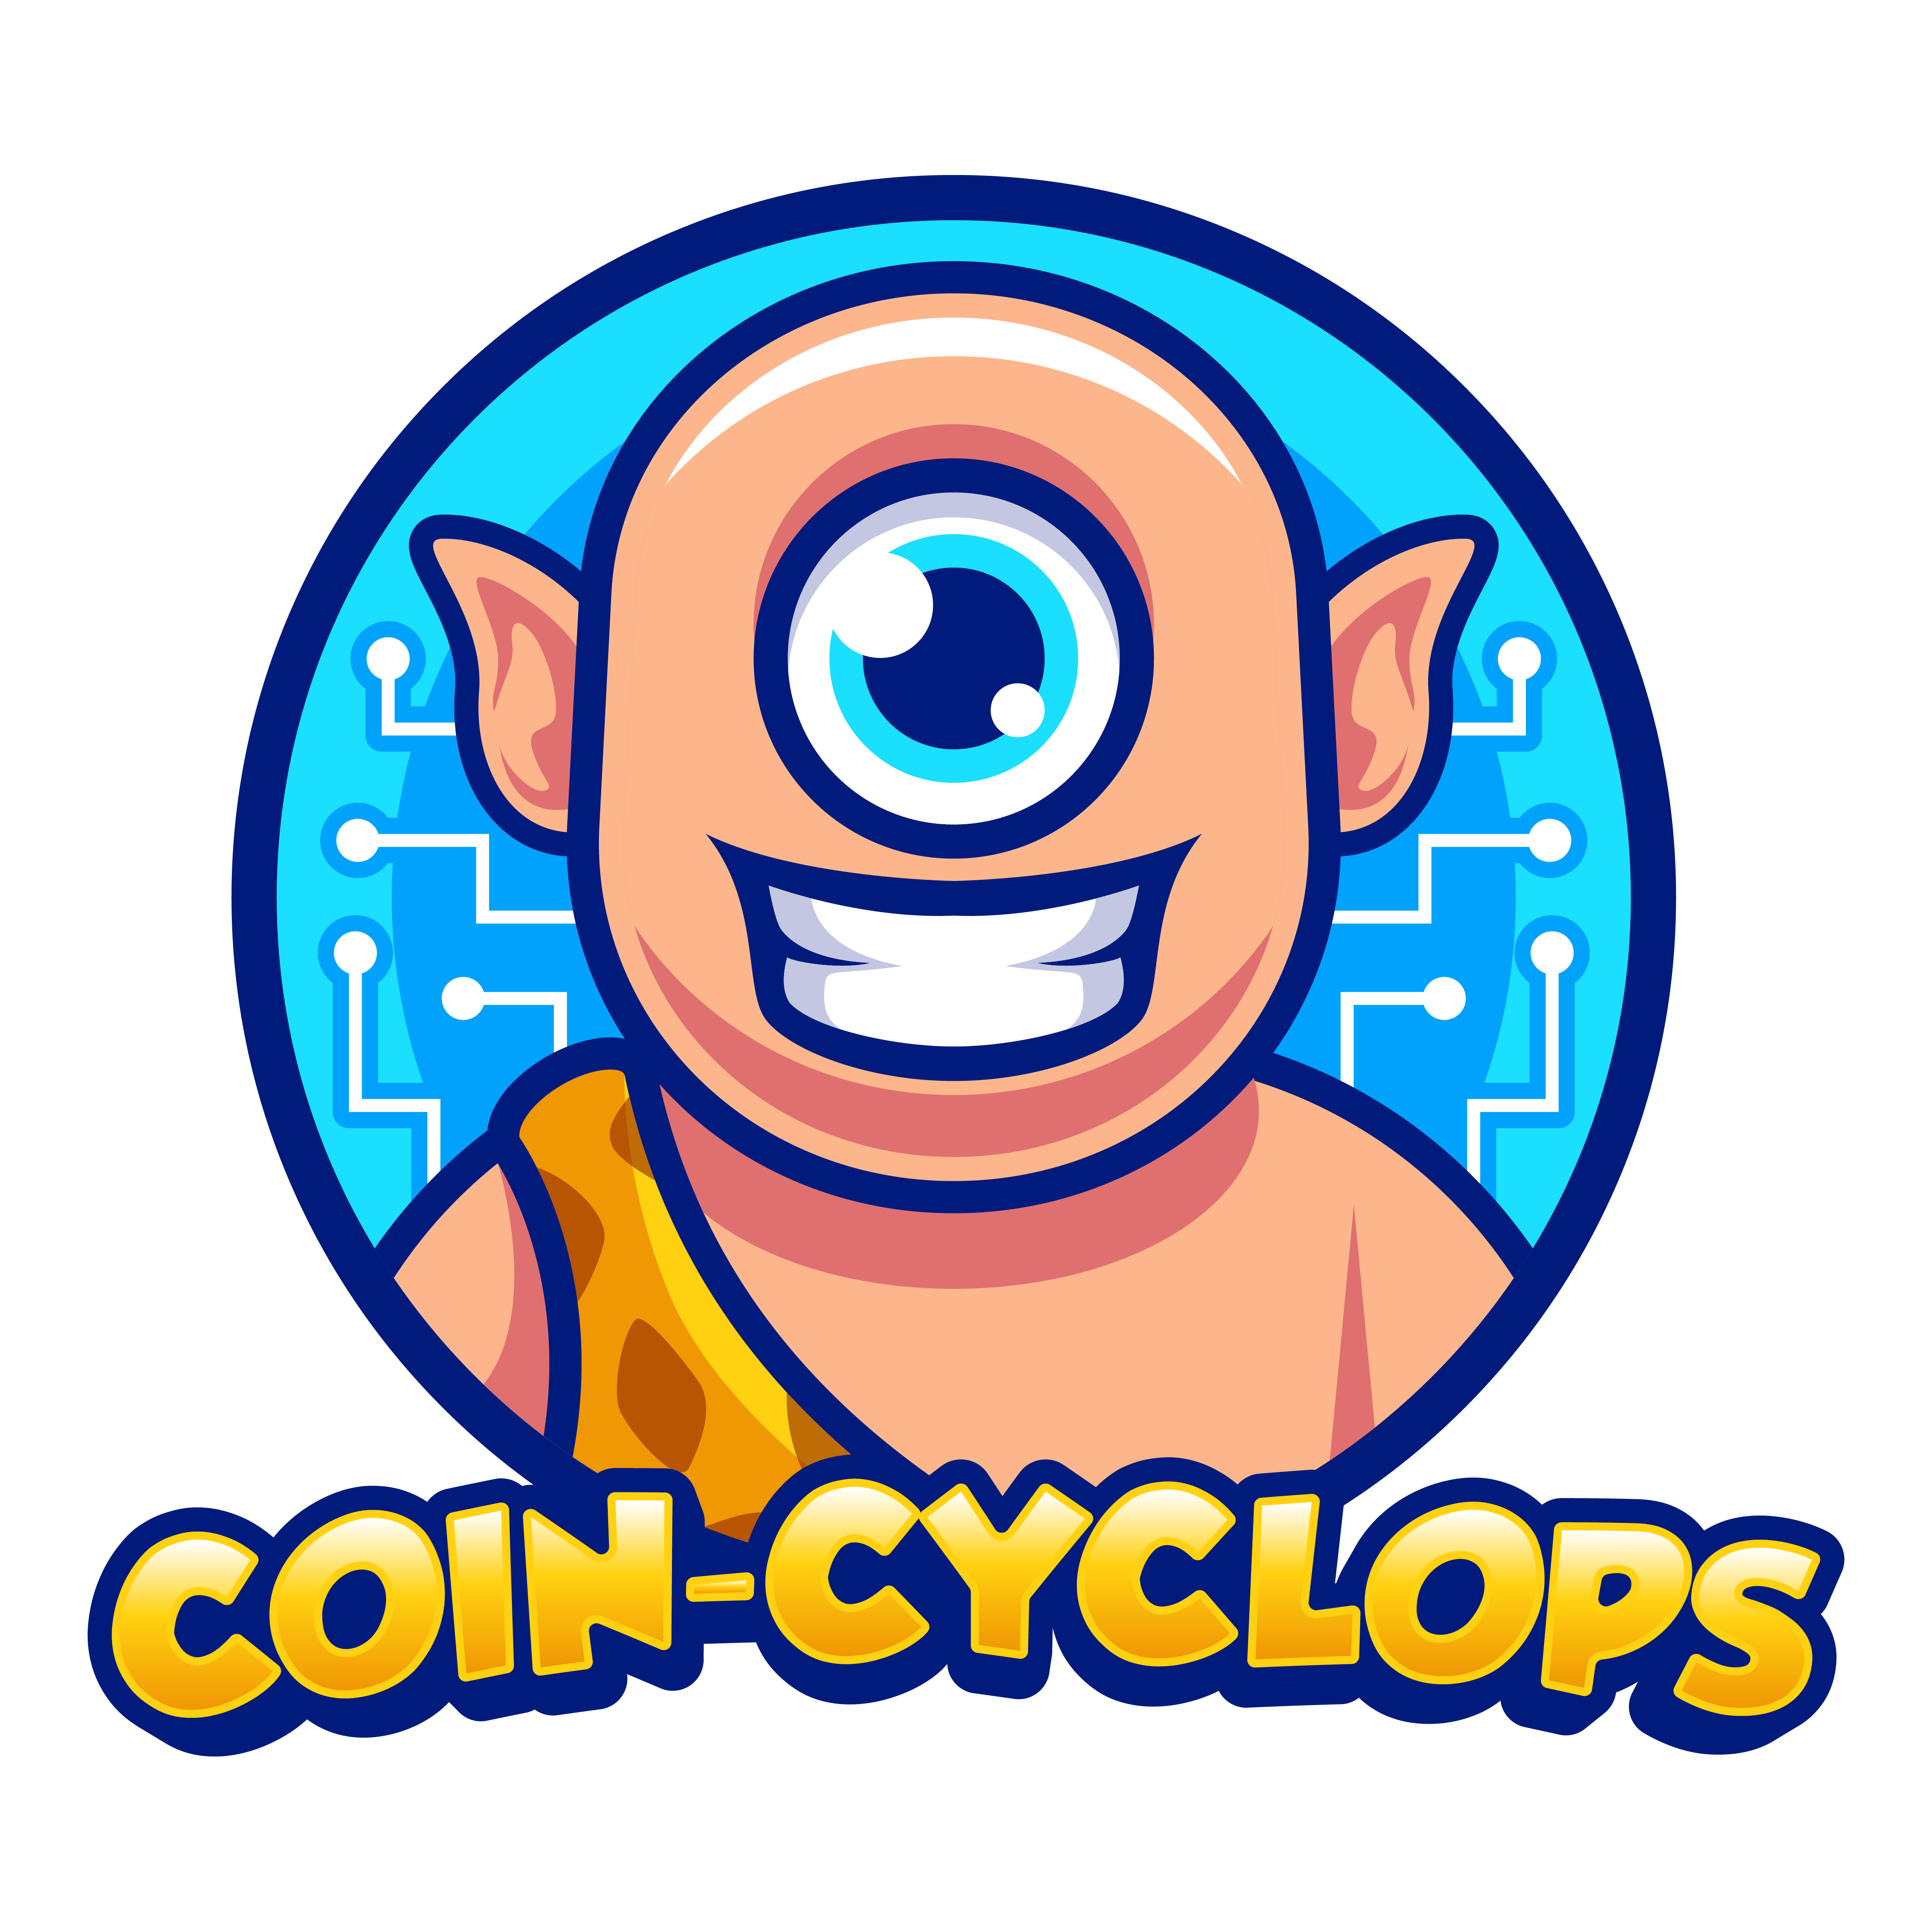 Coin-Cyclops-02 (7)